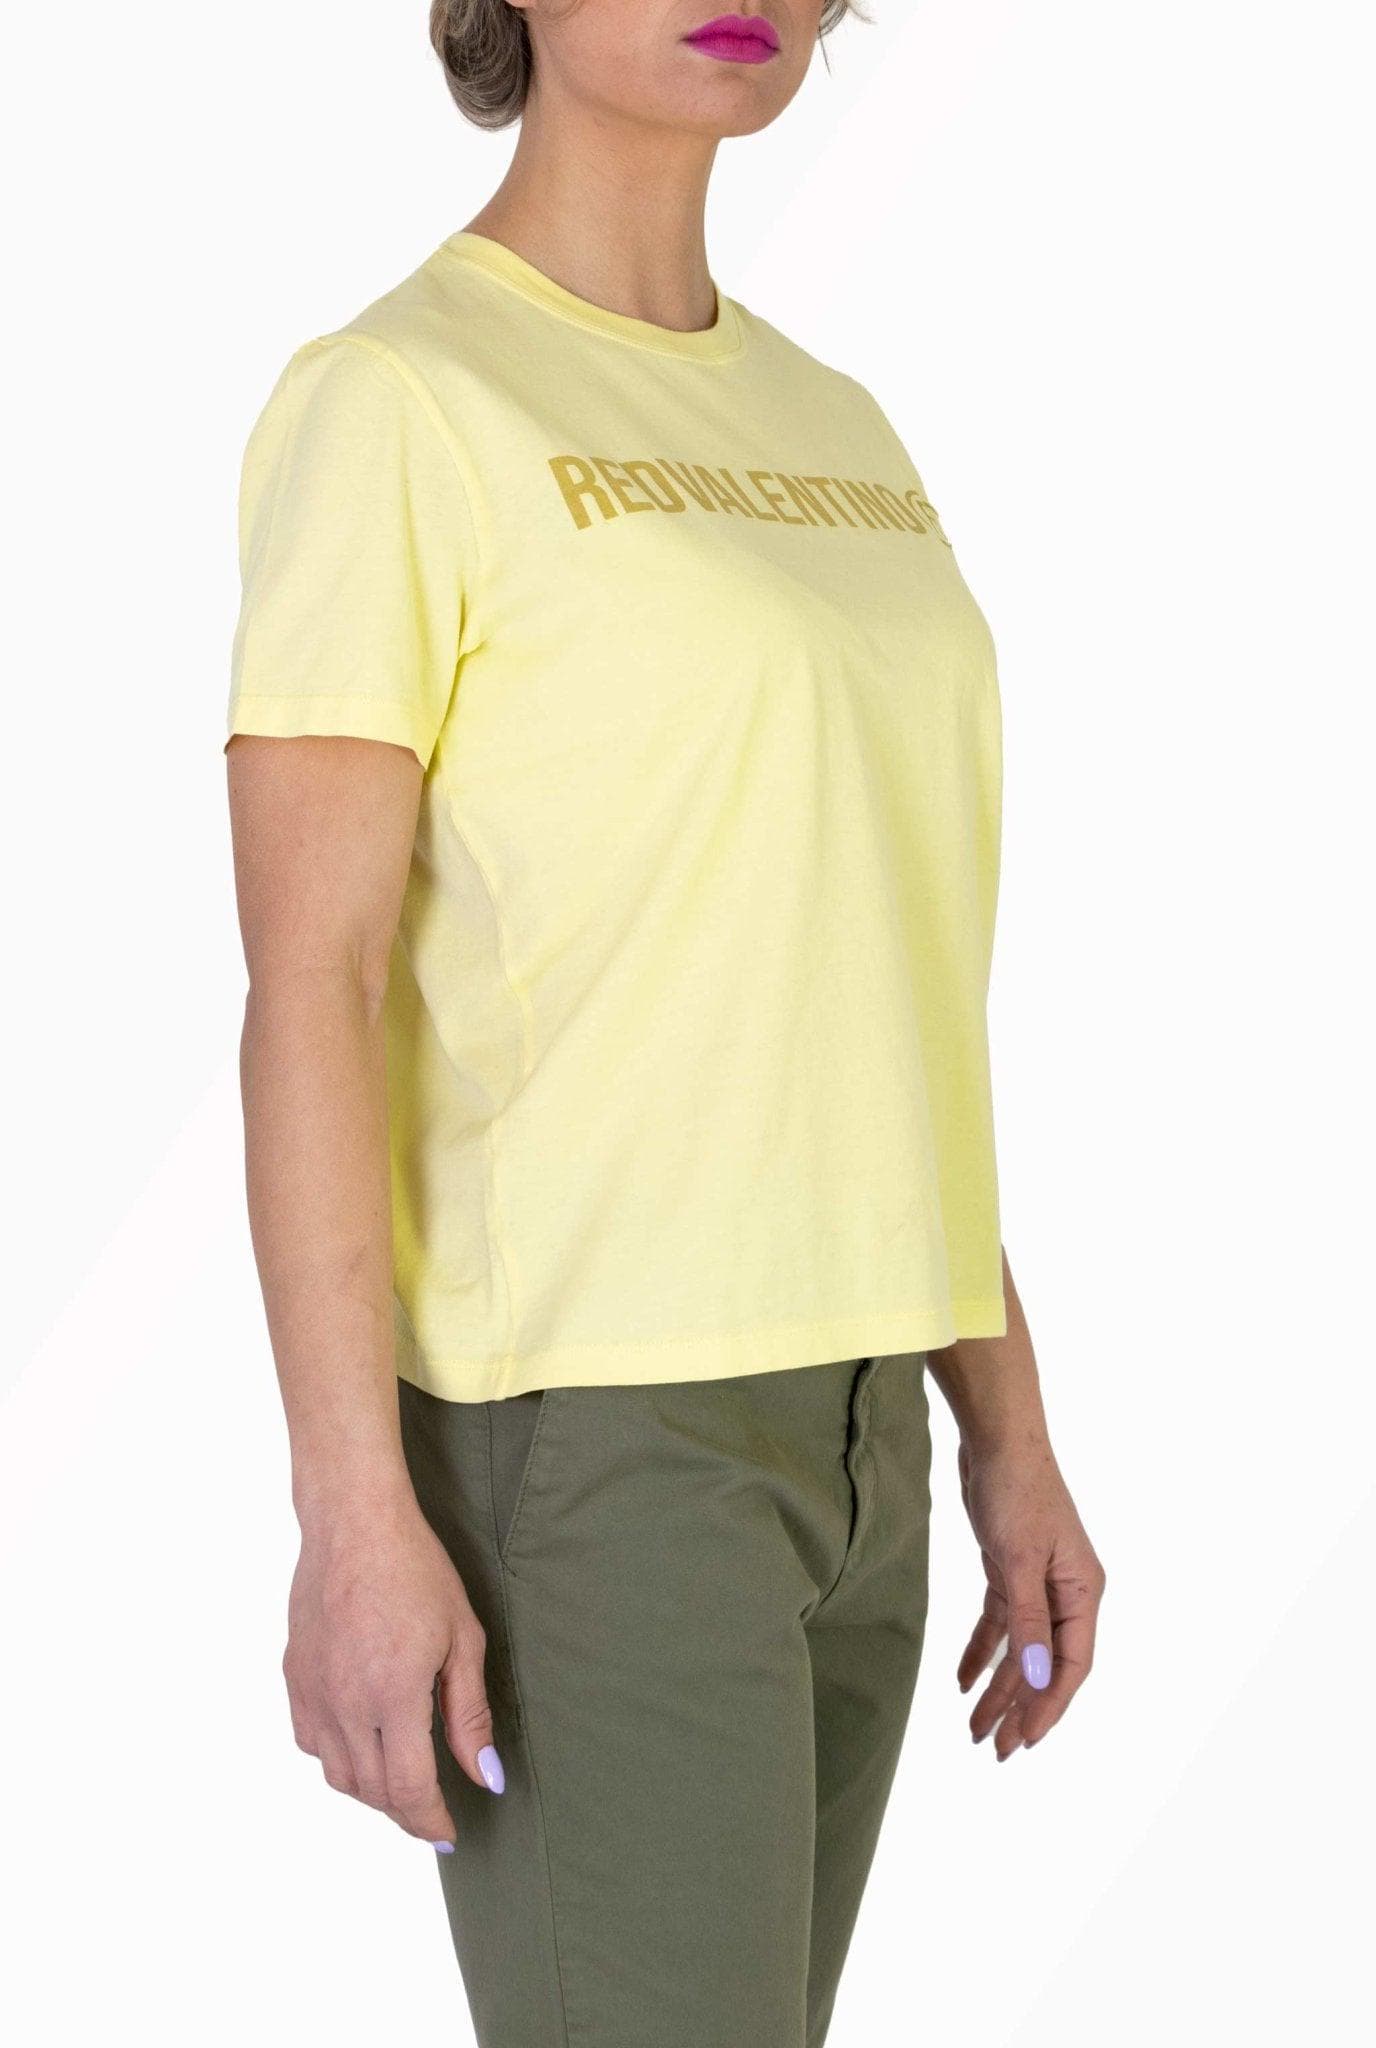 T-shirt gialla con logo REDV- Red Valentino -Giorgioquinto